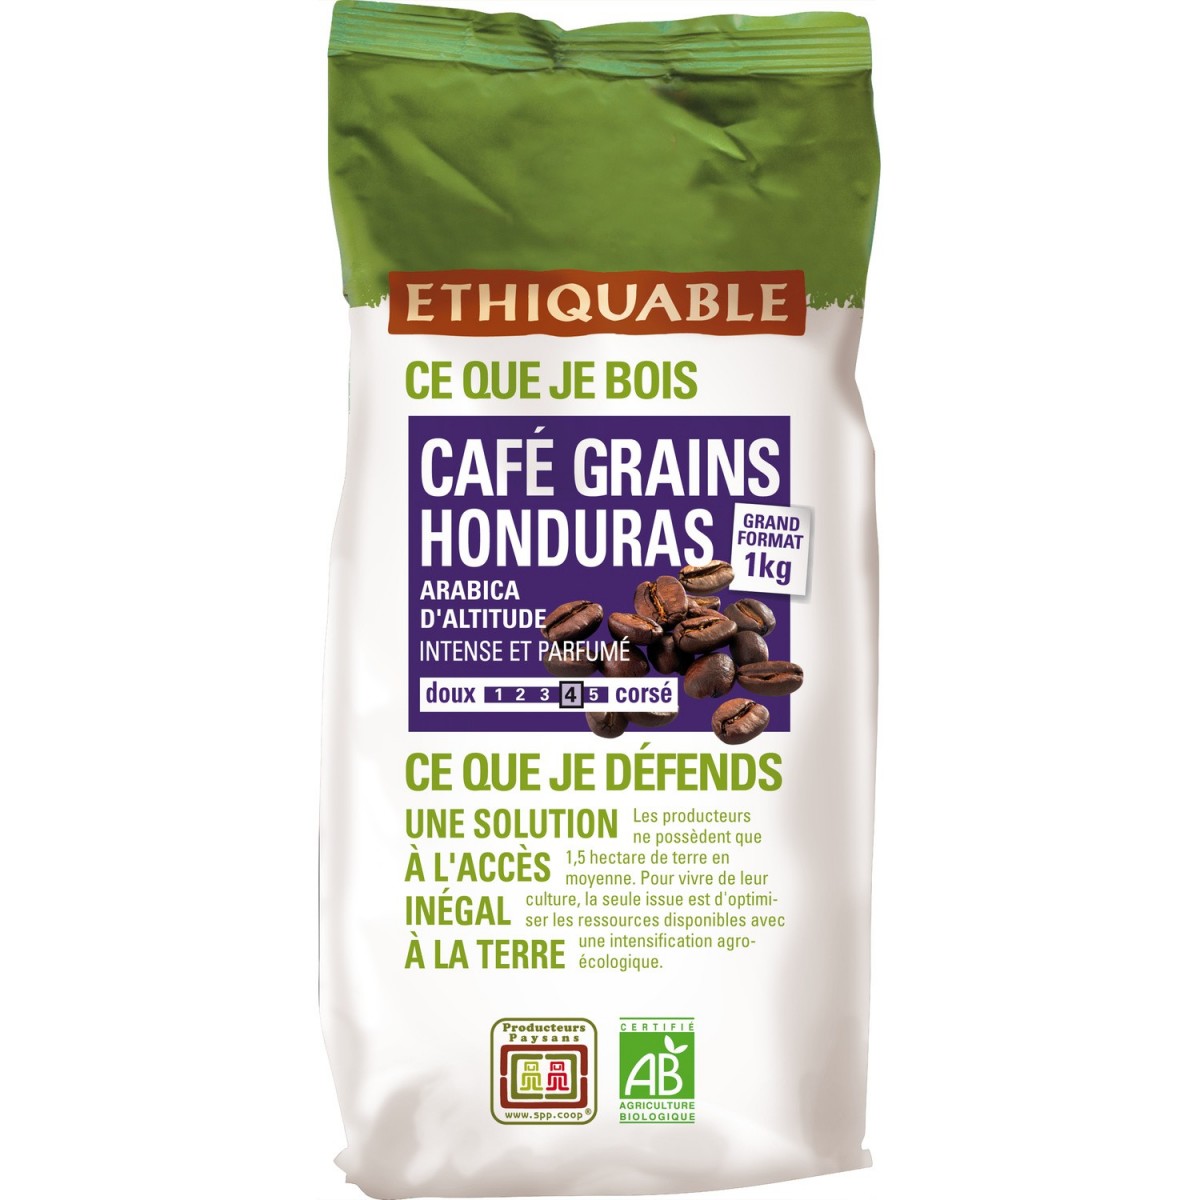 Café grain honduras 100% arabica 1Kg